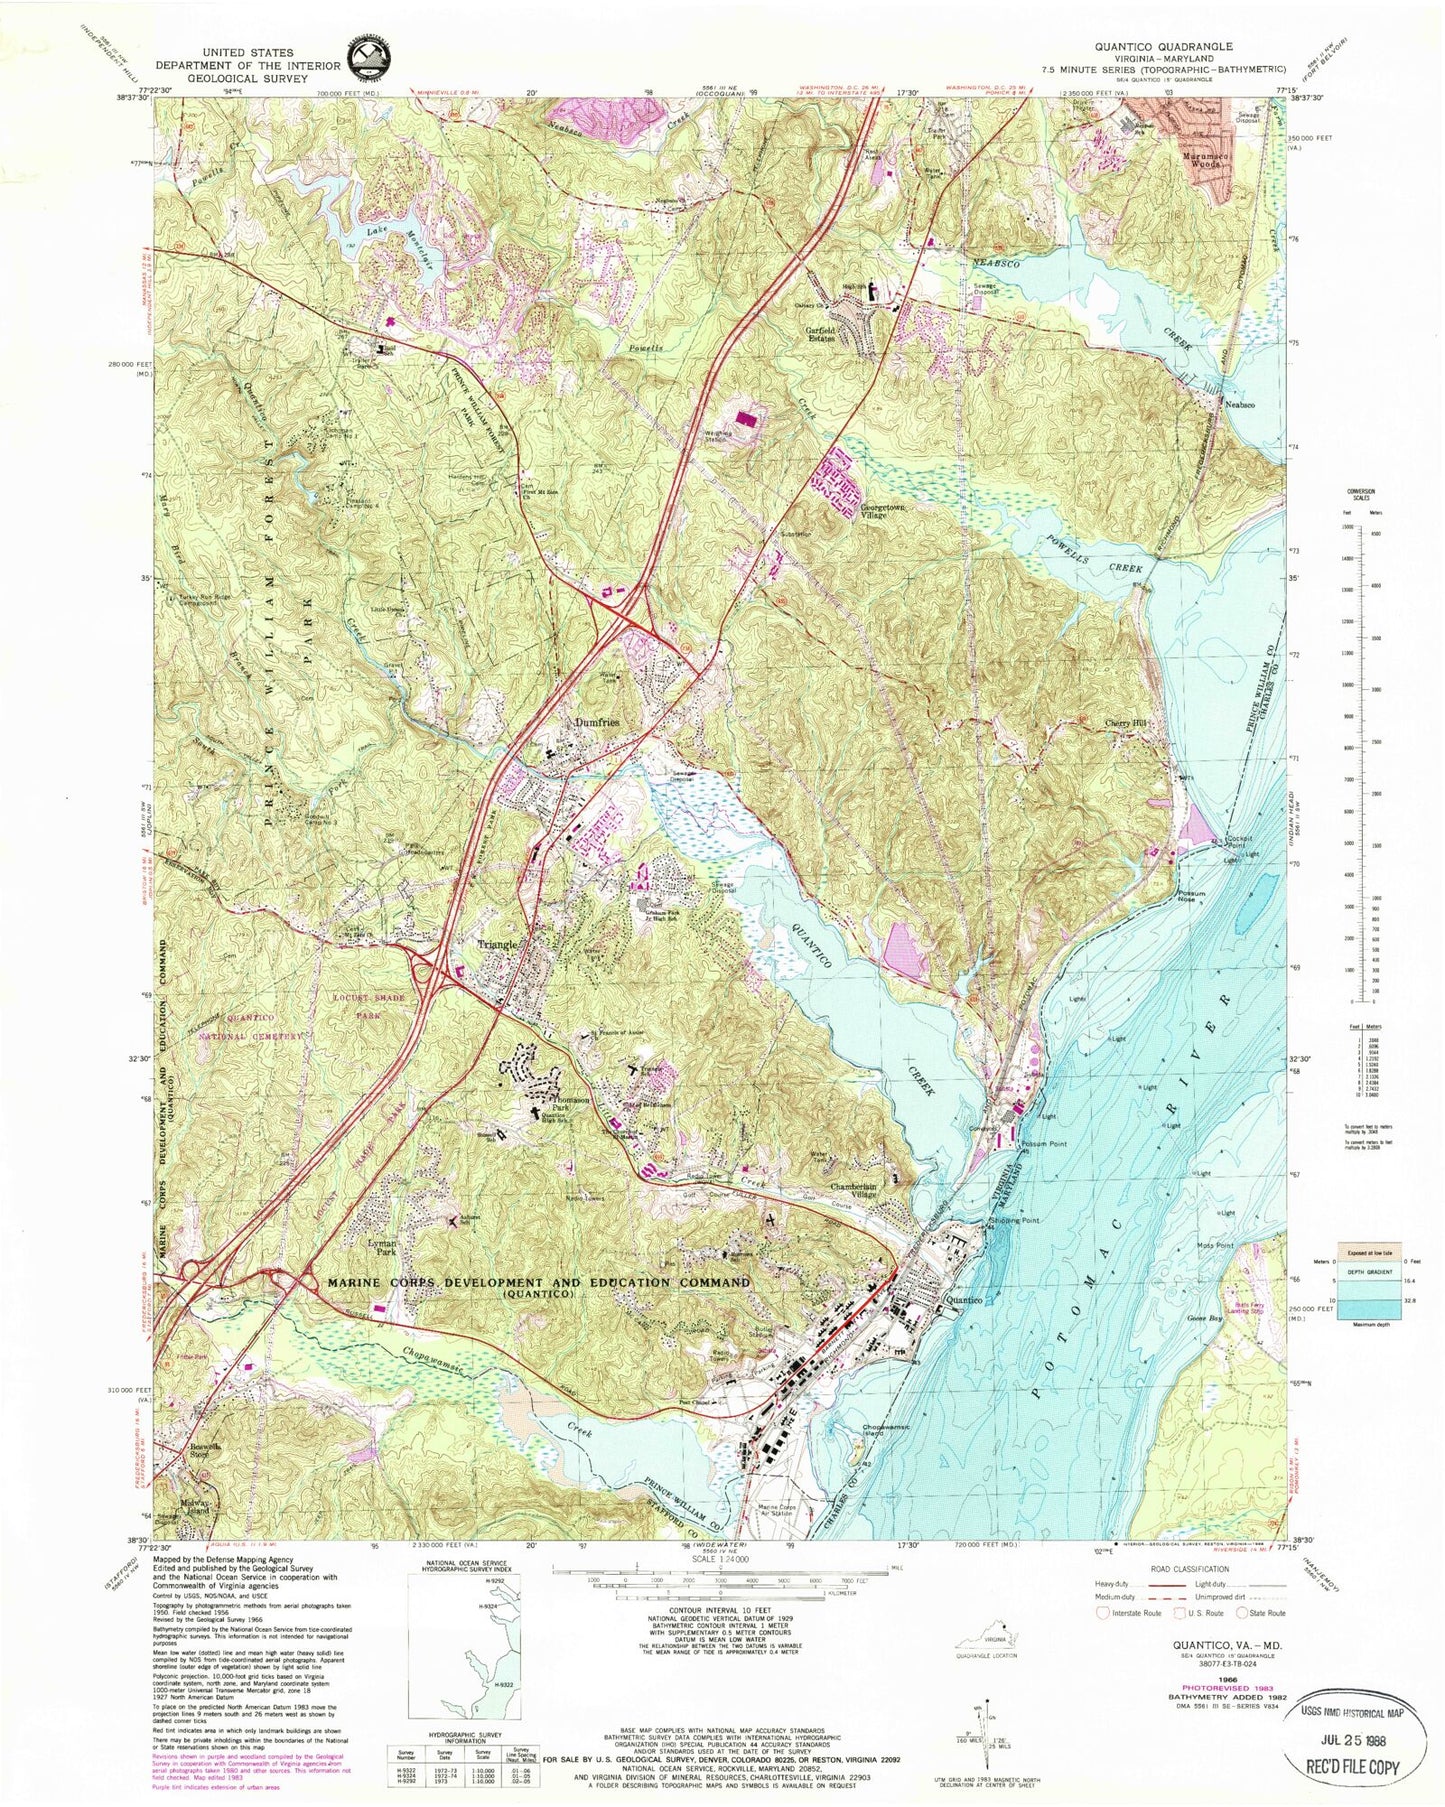 USGS Classic Quantico Virginia 7.5'x7.5' Topo Map Image